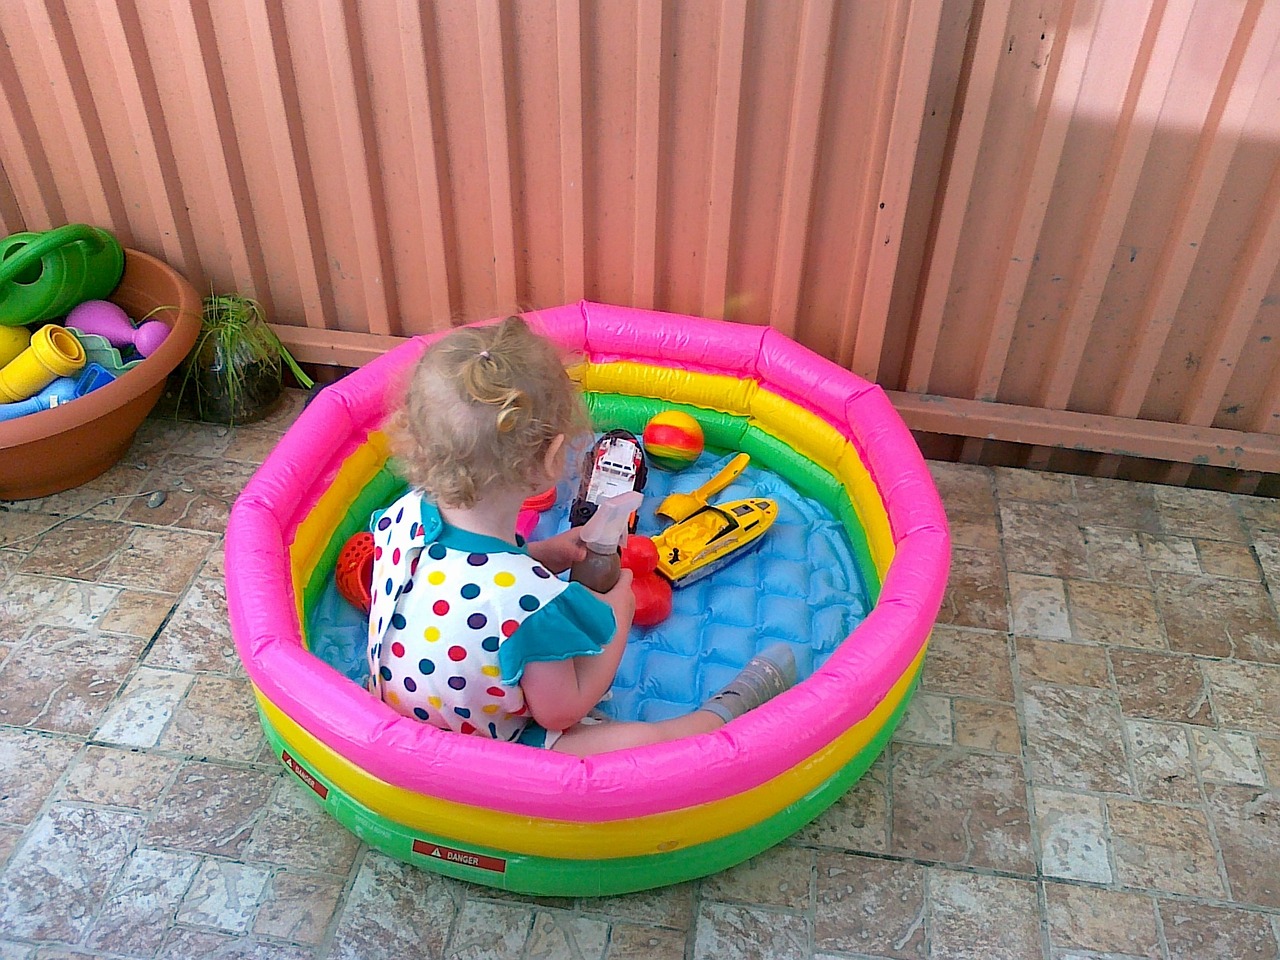 I moje dcera je celá po mě. Miluje bazén. 